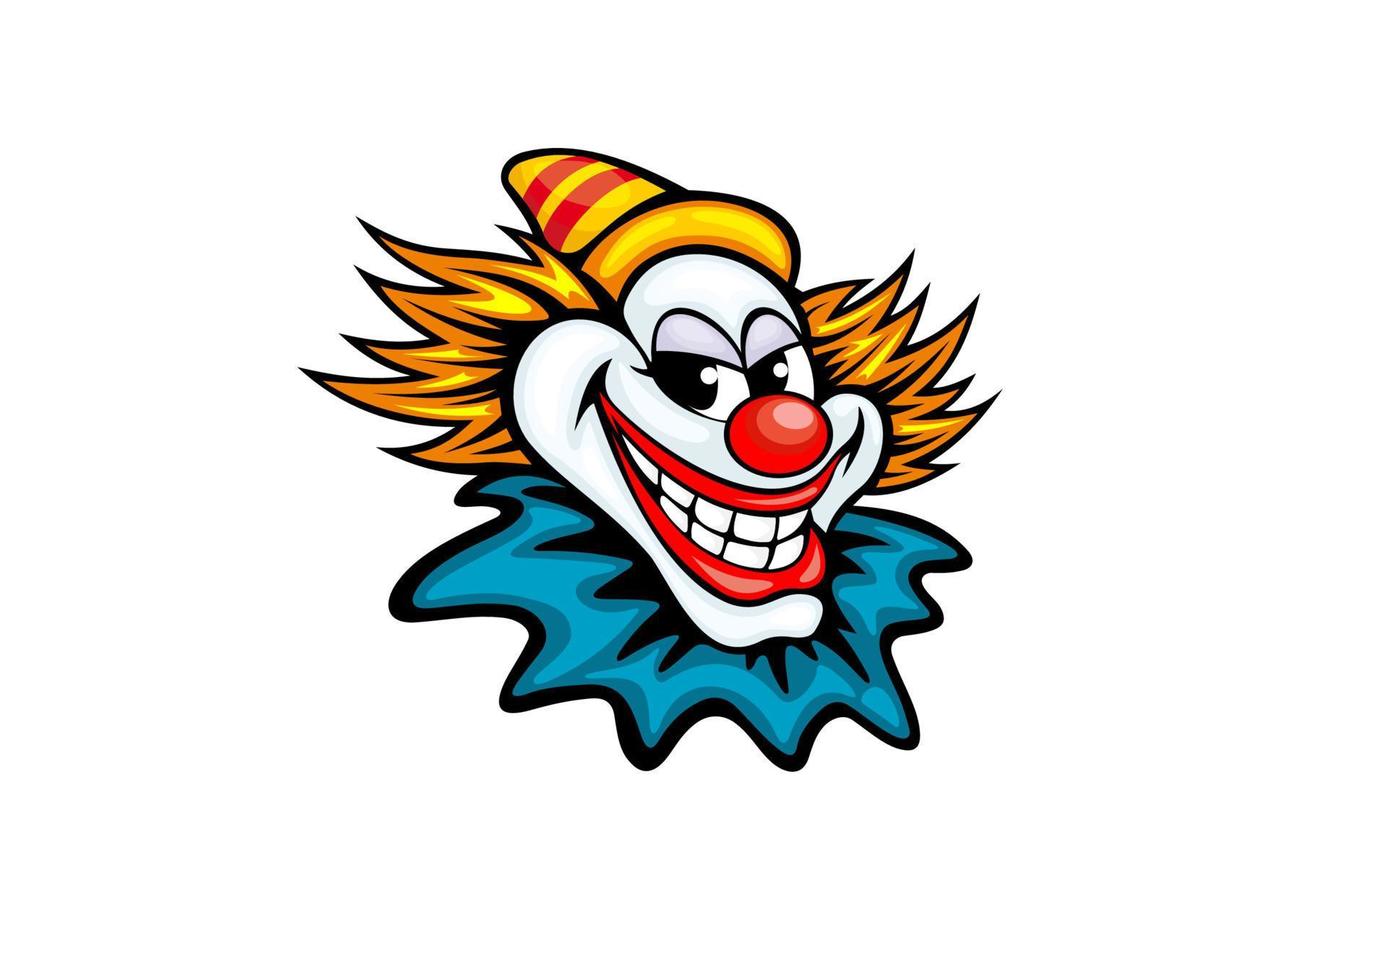 Fun circus clown vector